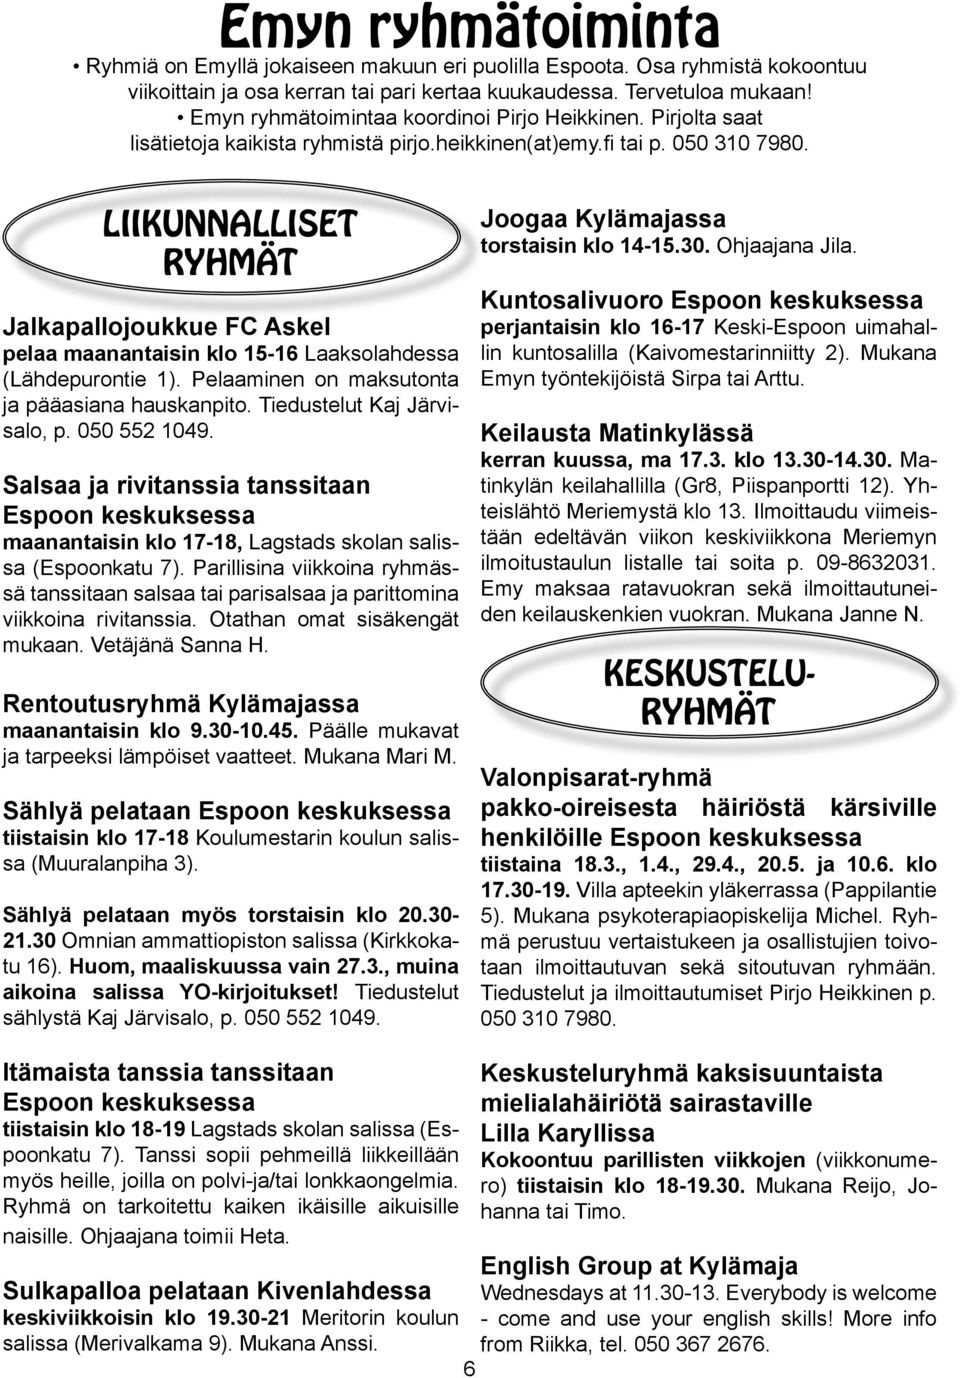 LIIKUNNALLISET RYHMÄT Jalkapallojoukkue FC Askel pelaa maanantaisin klo 15-16 Laaksolahdessa (Lähdepurontie 1). Pelaaminen on maksutonta ja pääasiana hauskanpito. Tiedustelut Kaj Järvisalo, p.